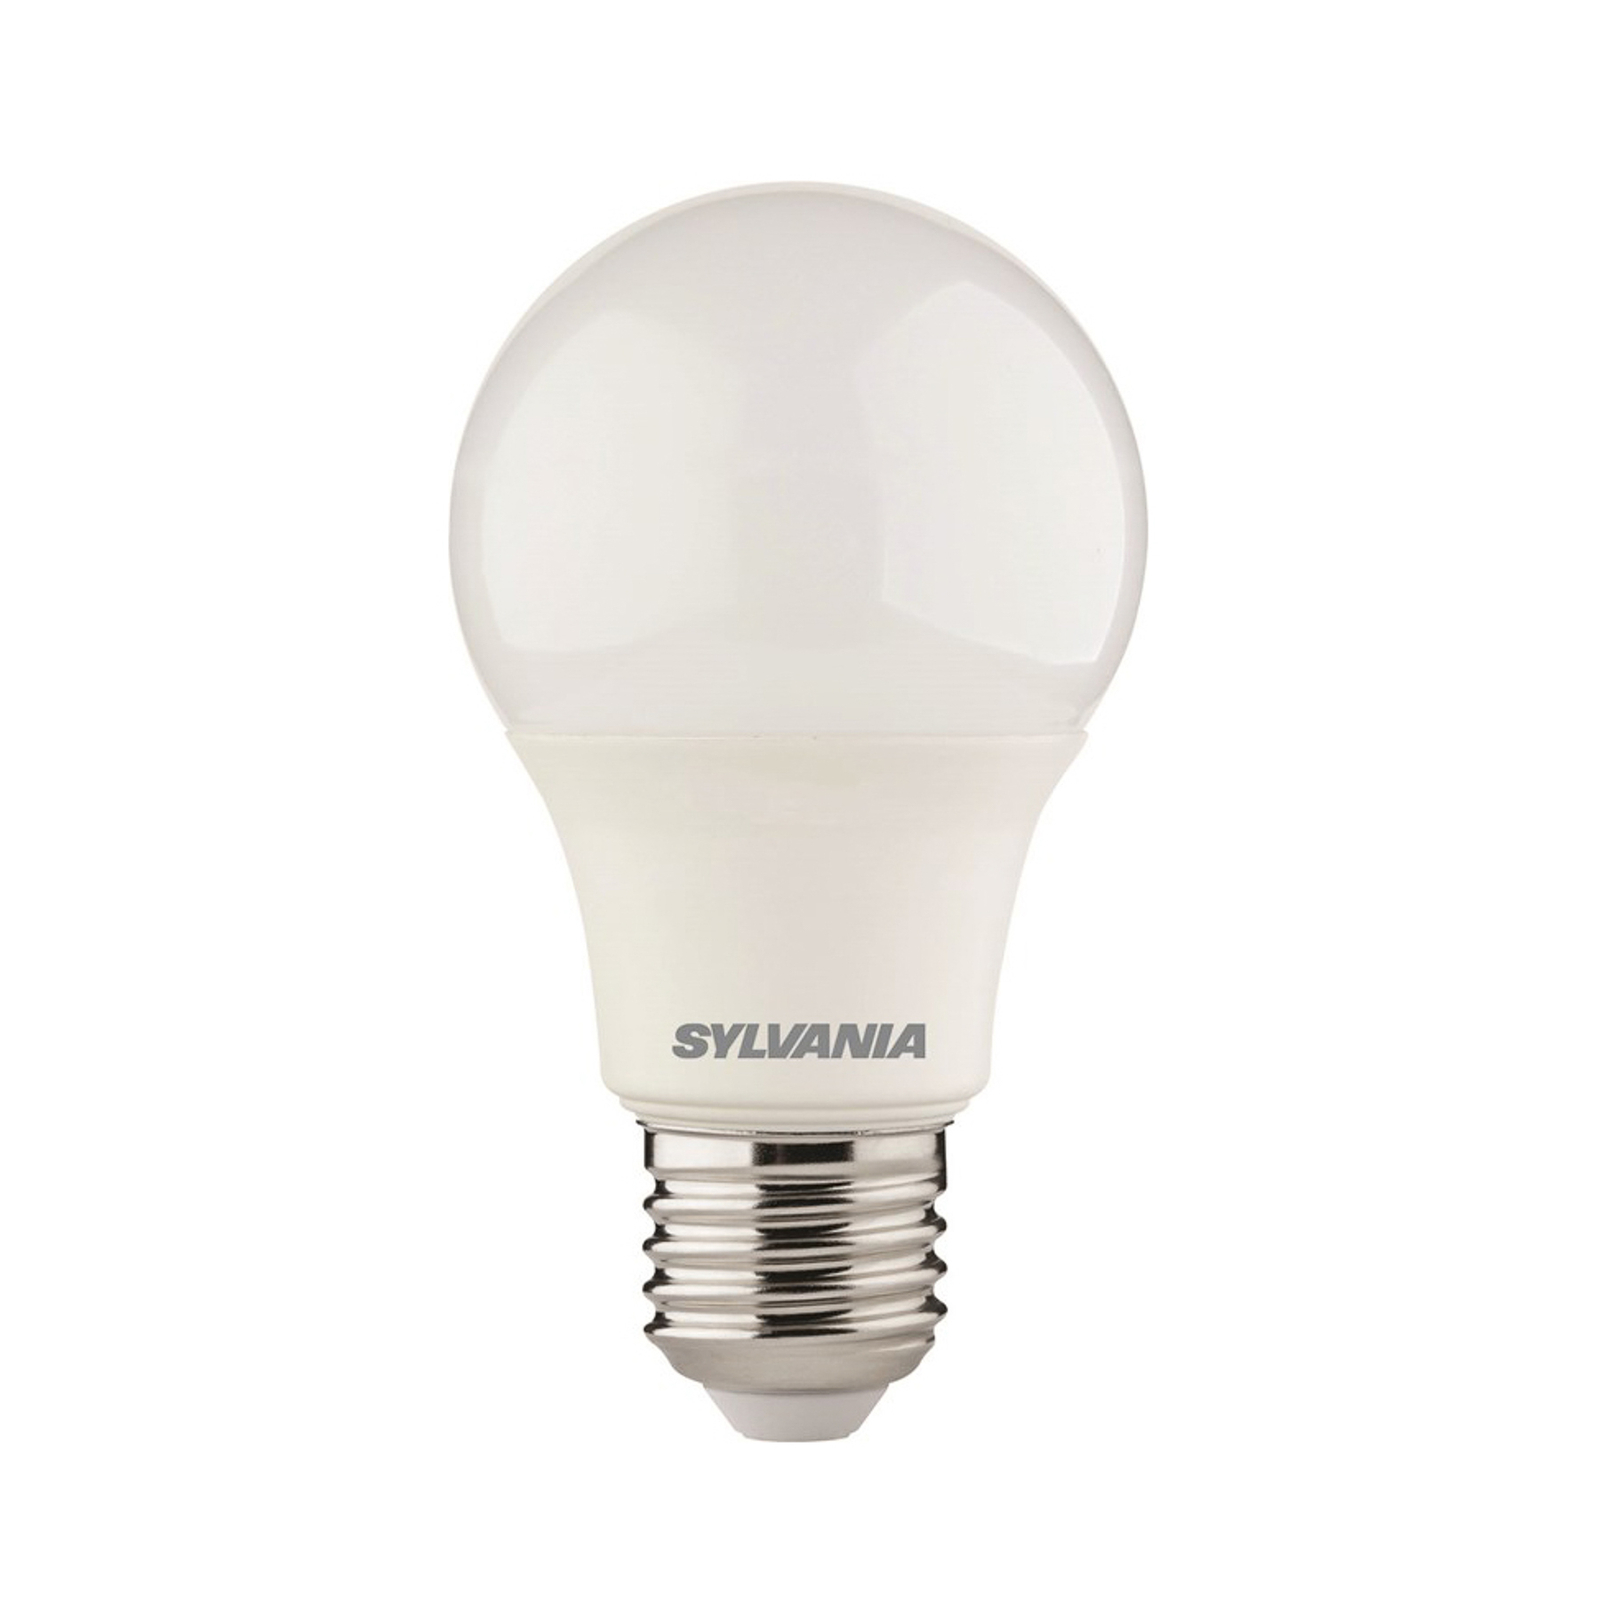 LED žiarovka E27 ToLEDo A60 8W univerzálna biela